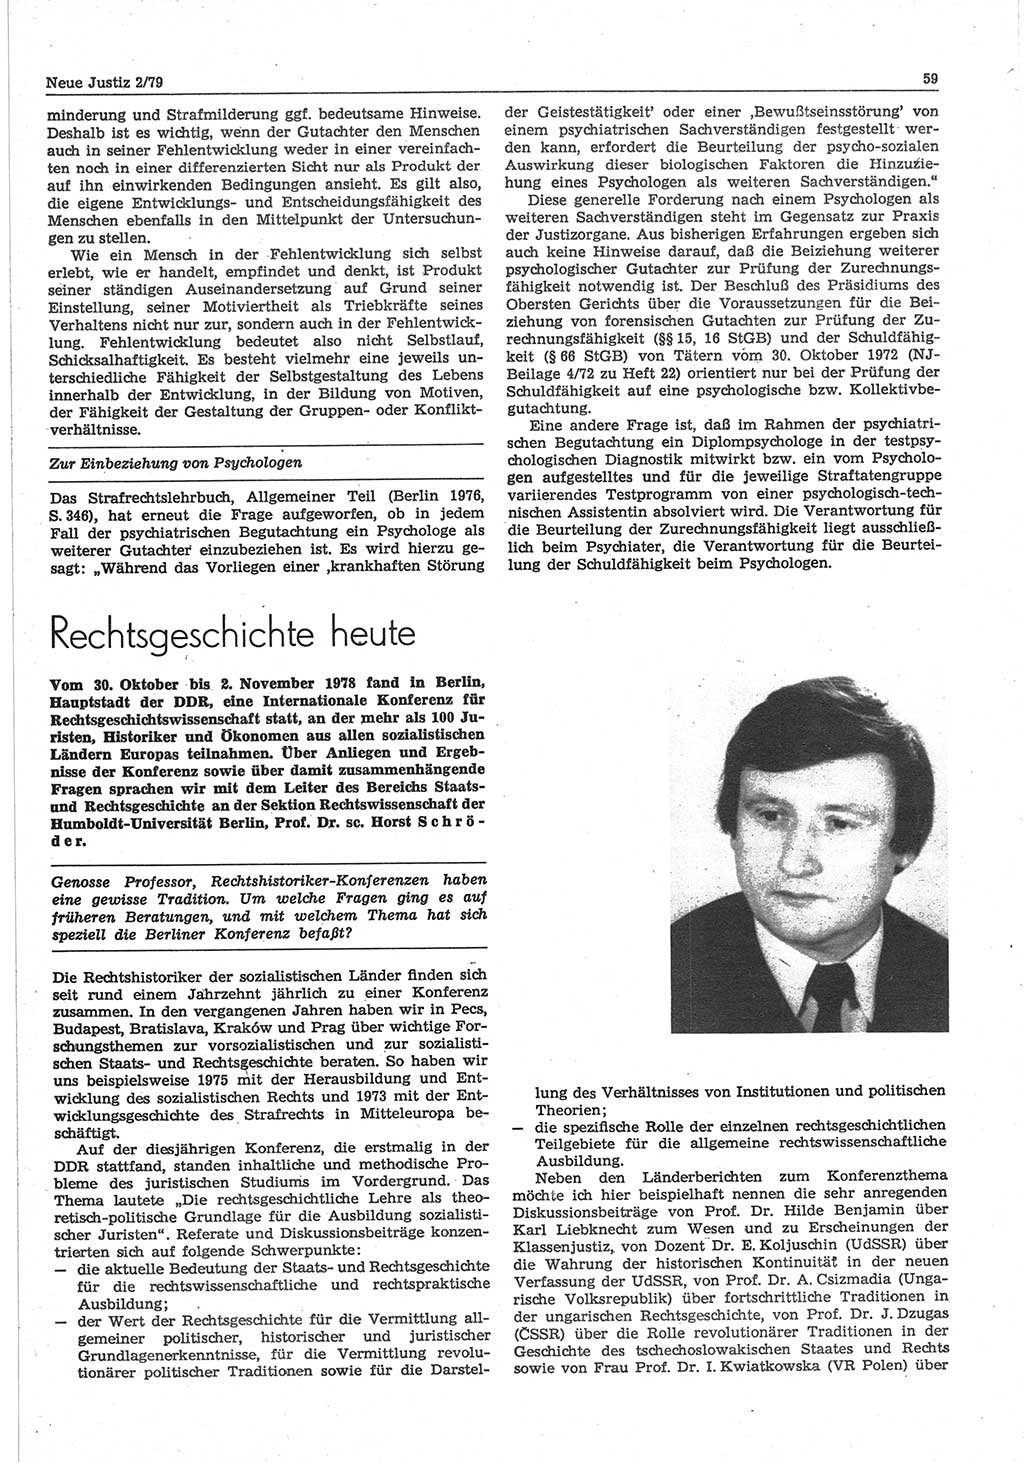 Neue Justiz (NJ), Zeitschrift für sozialistisches Recht und Gesetzlichkeit [Deutsche Demokratische Republik (DDR)], 33. Jahrgang 1979, Seite 59 (NJ DDR 1979, S. 59)